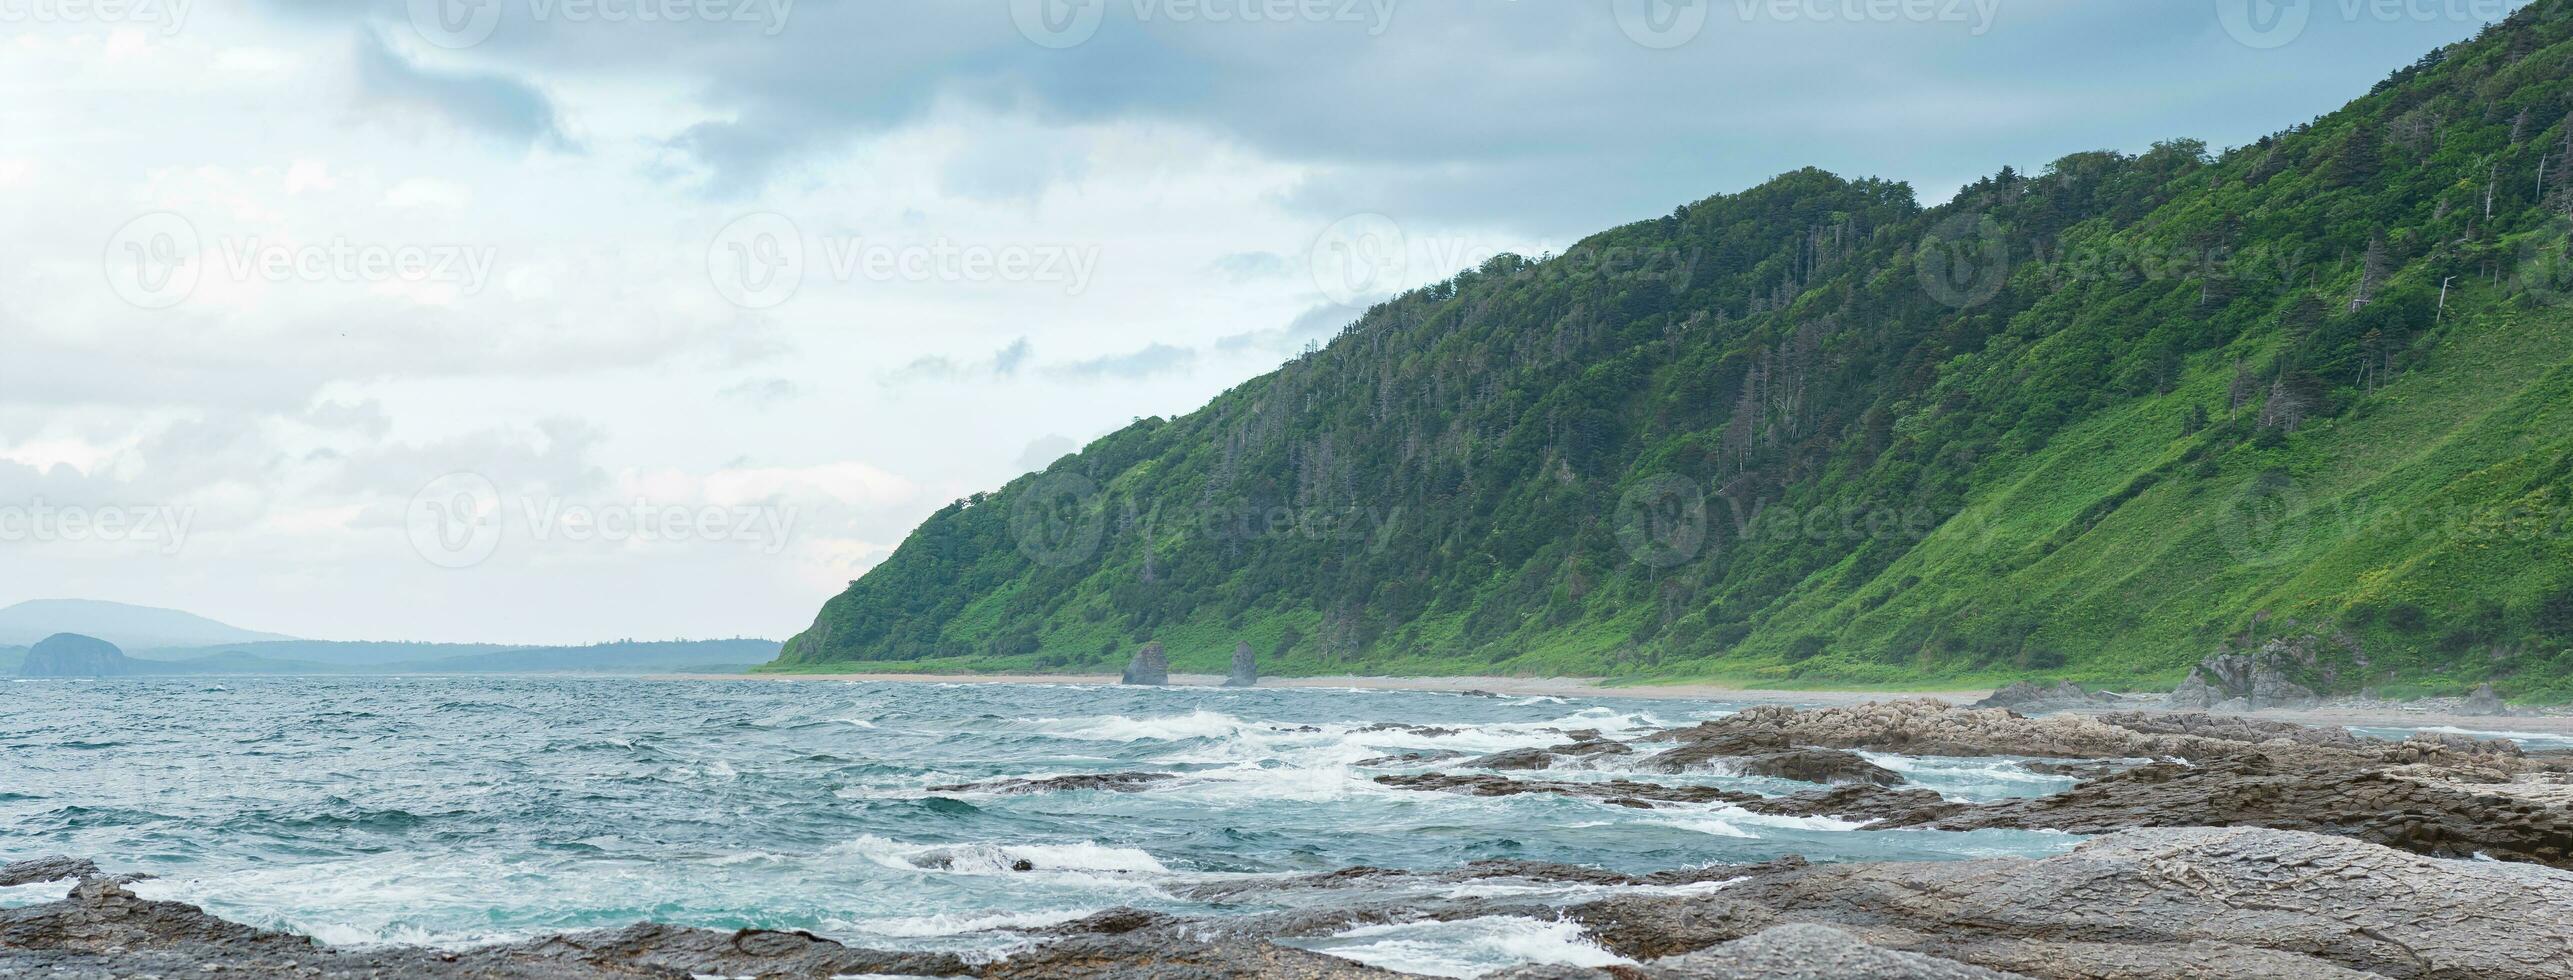 côtier paysage, magnifique boisé rochers sur le vert côte de kunashir île photo